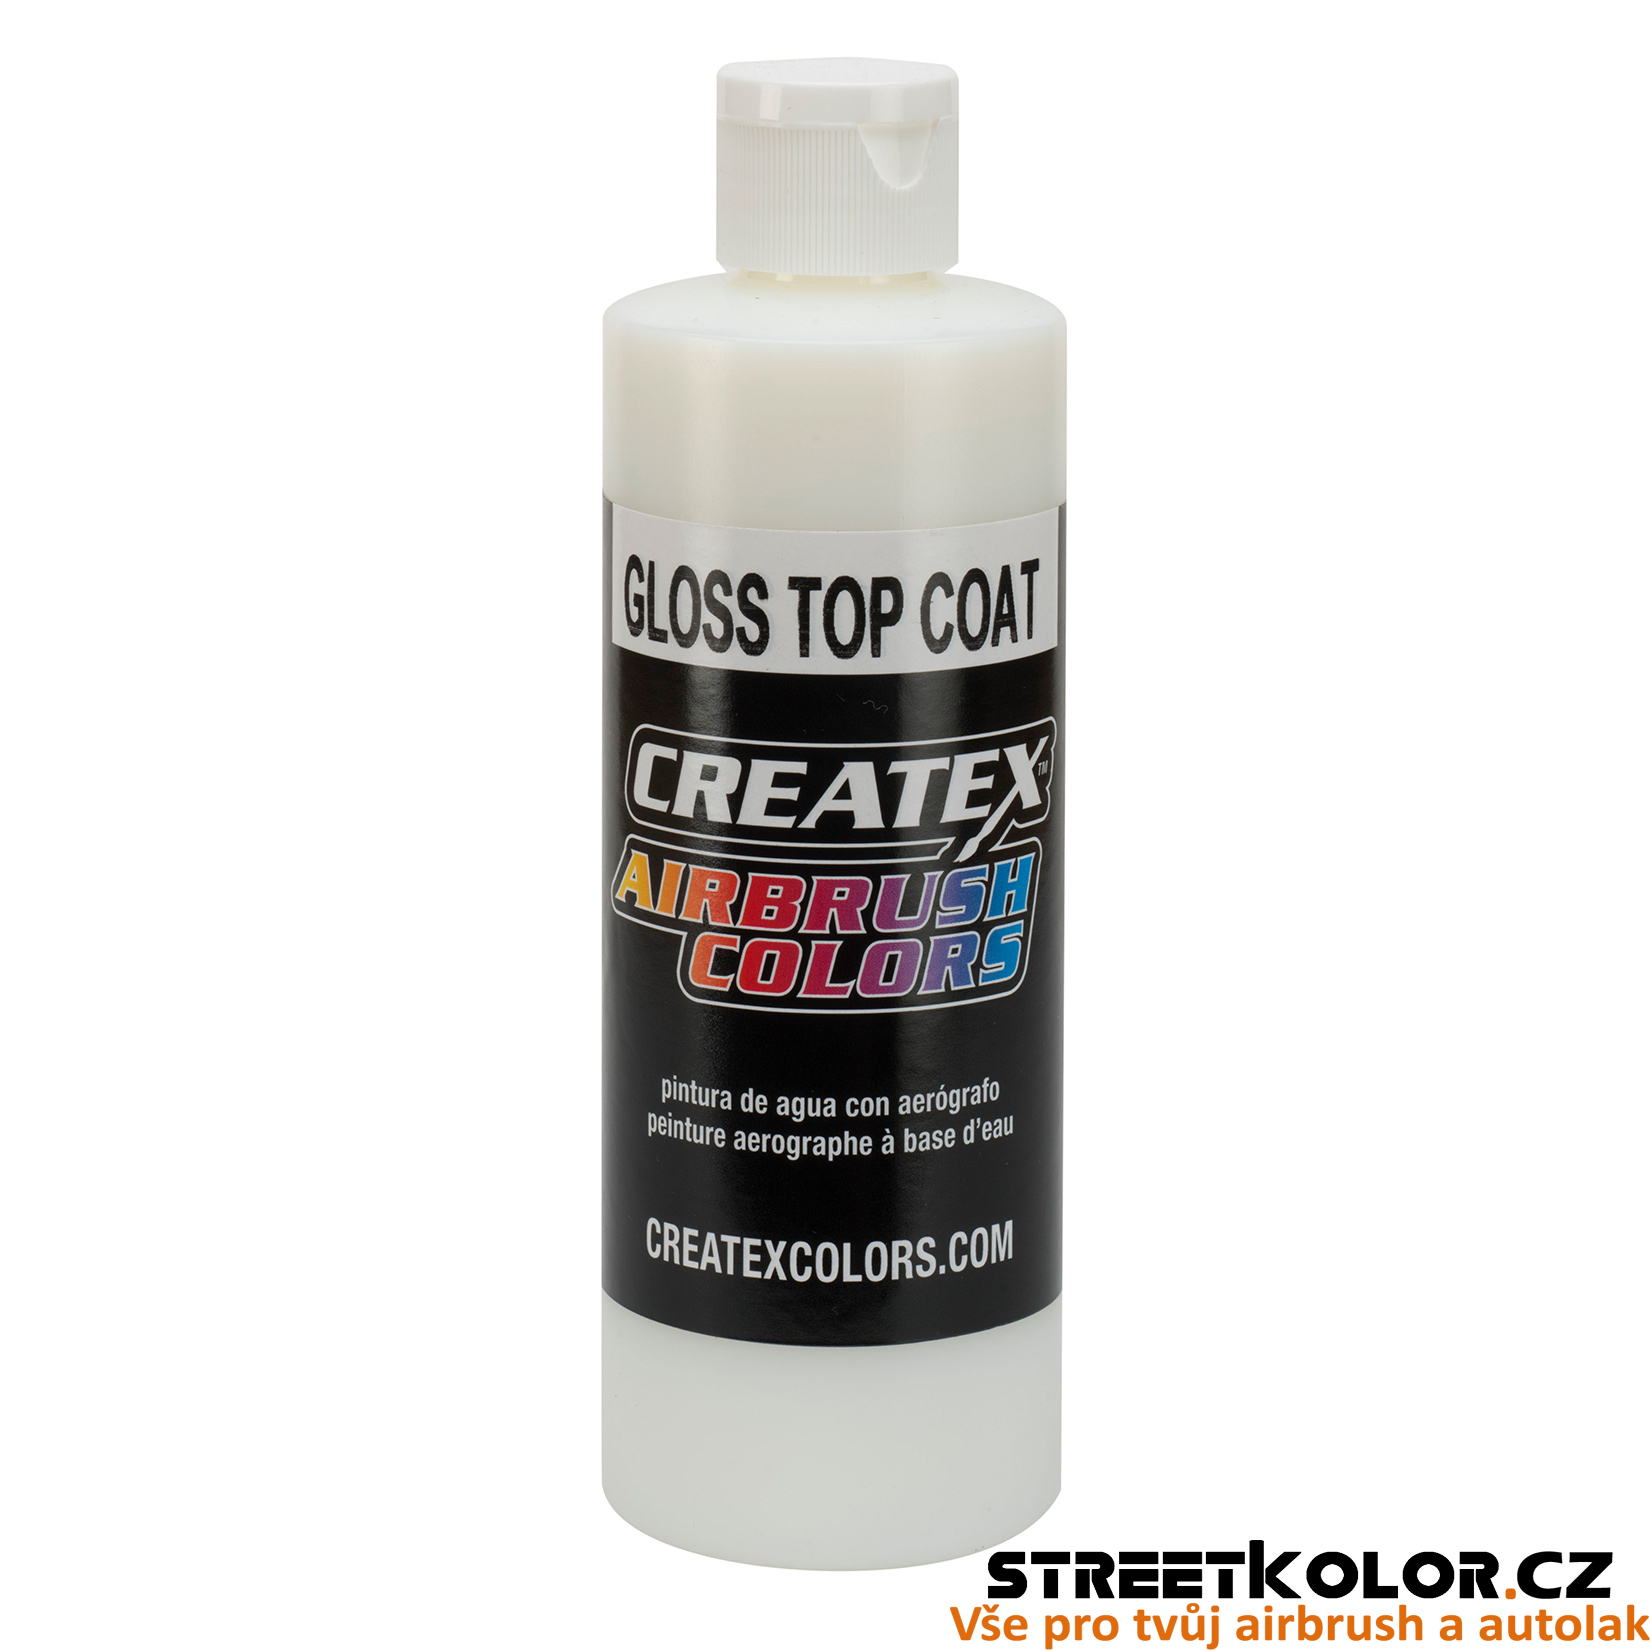 CreateX 5604 Lesklý lak - Gloss Top Coat 240ml